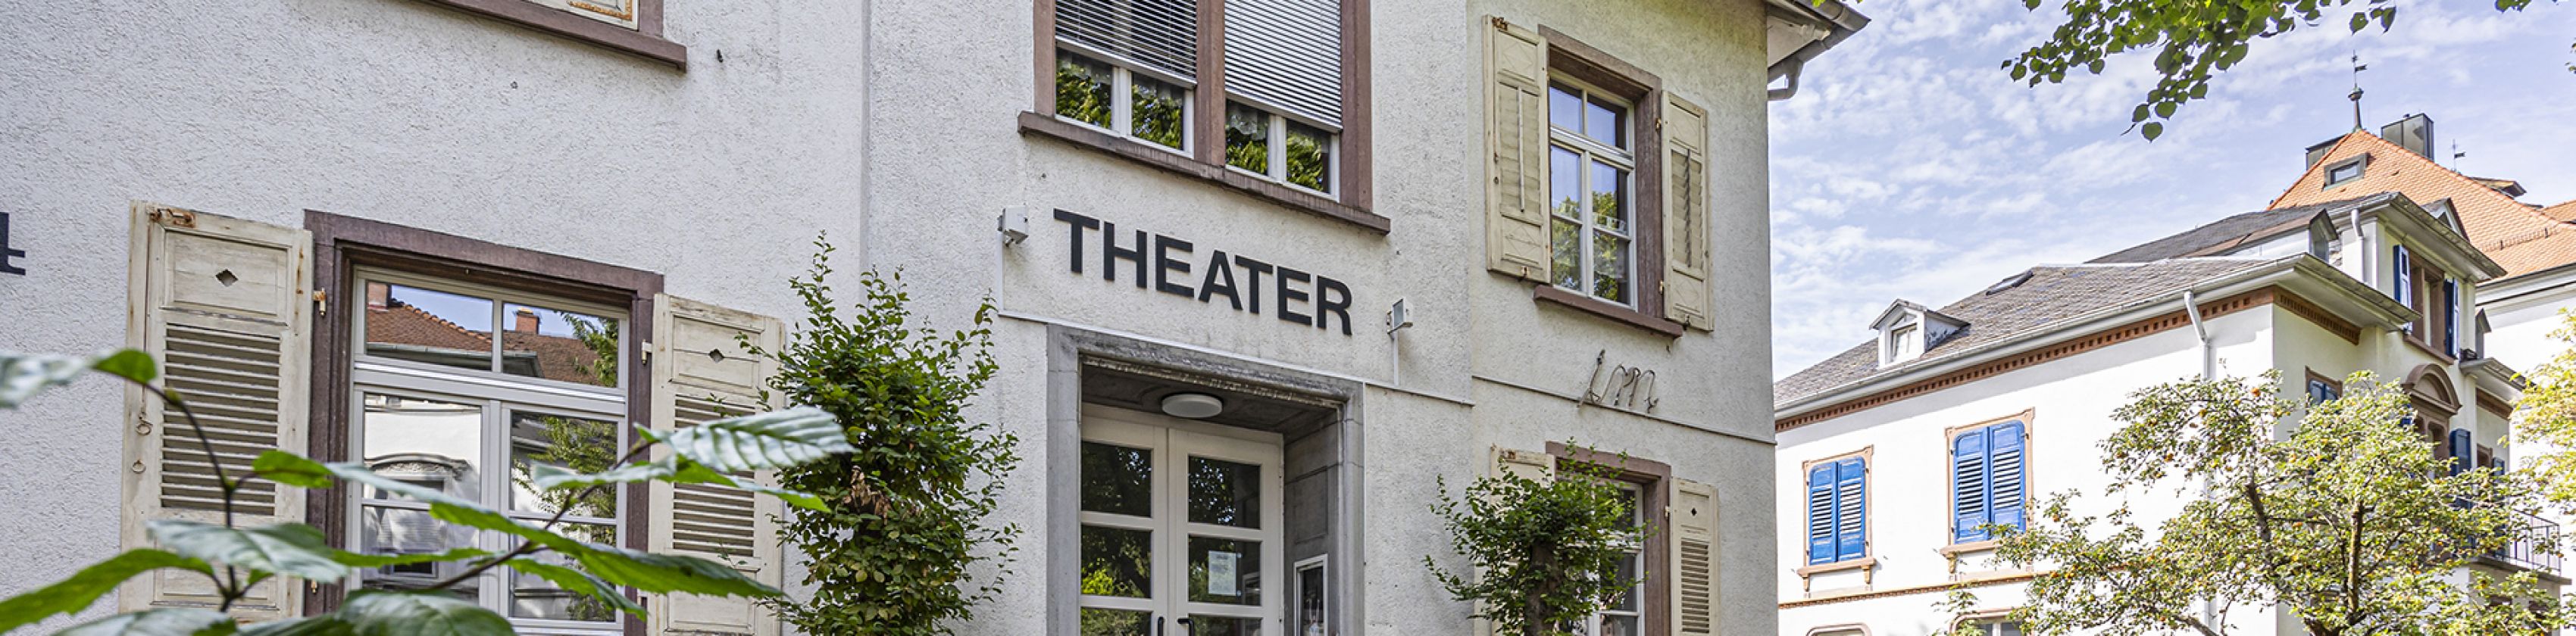 Theater-Marienbad-FWTM-Spiegelhalter.5